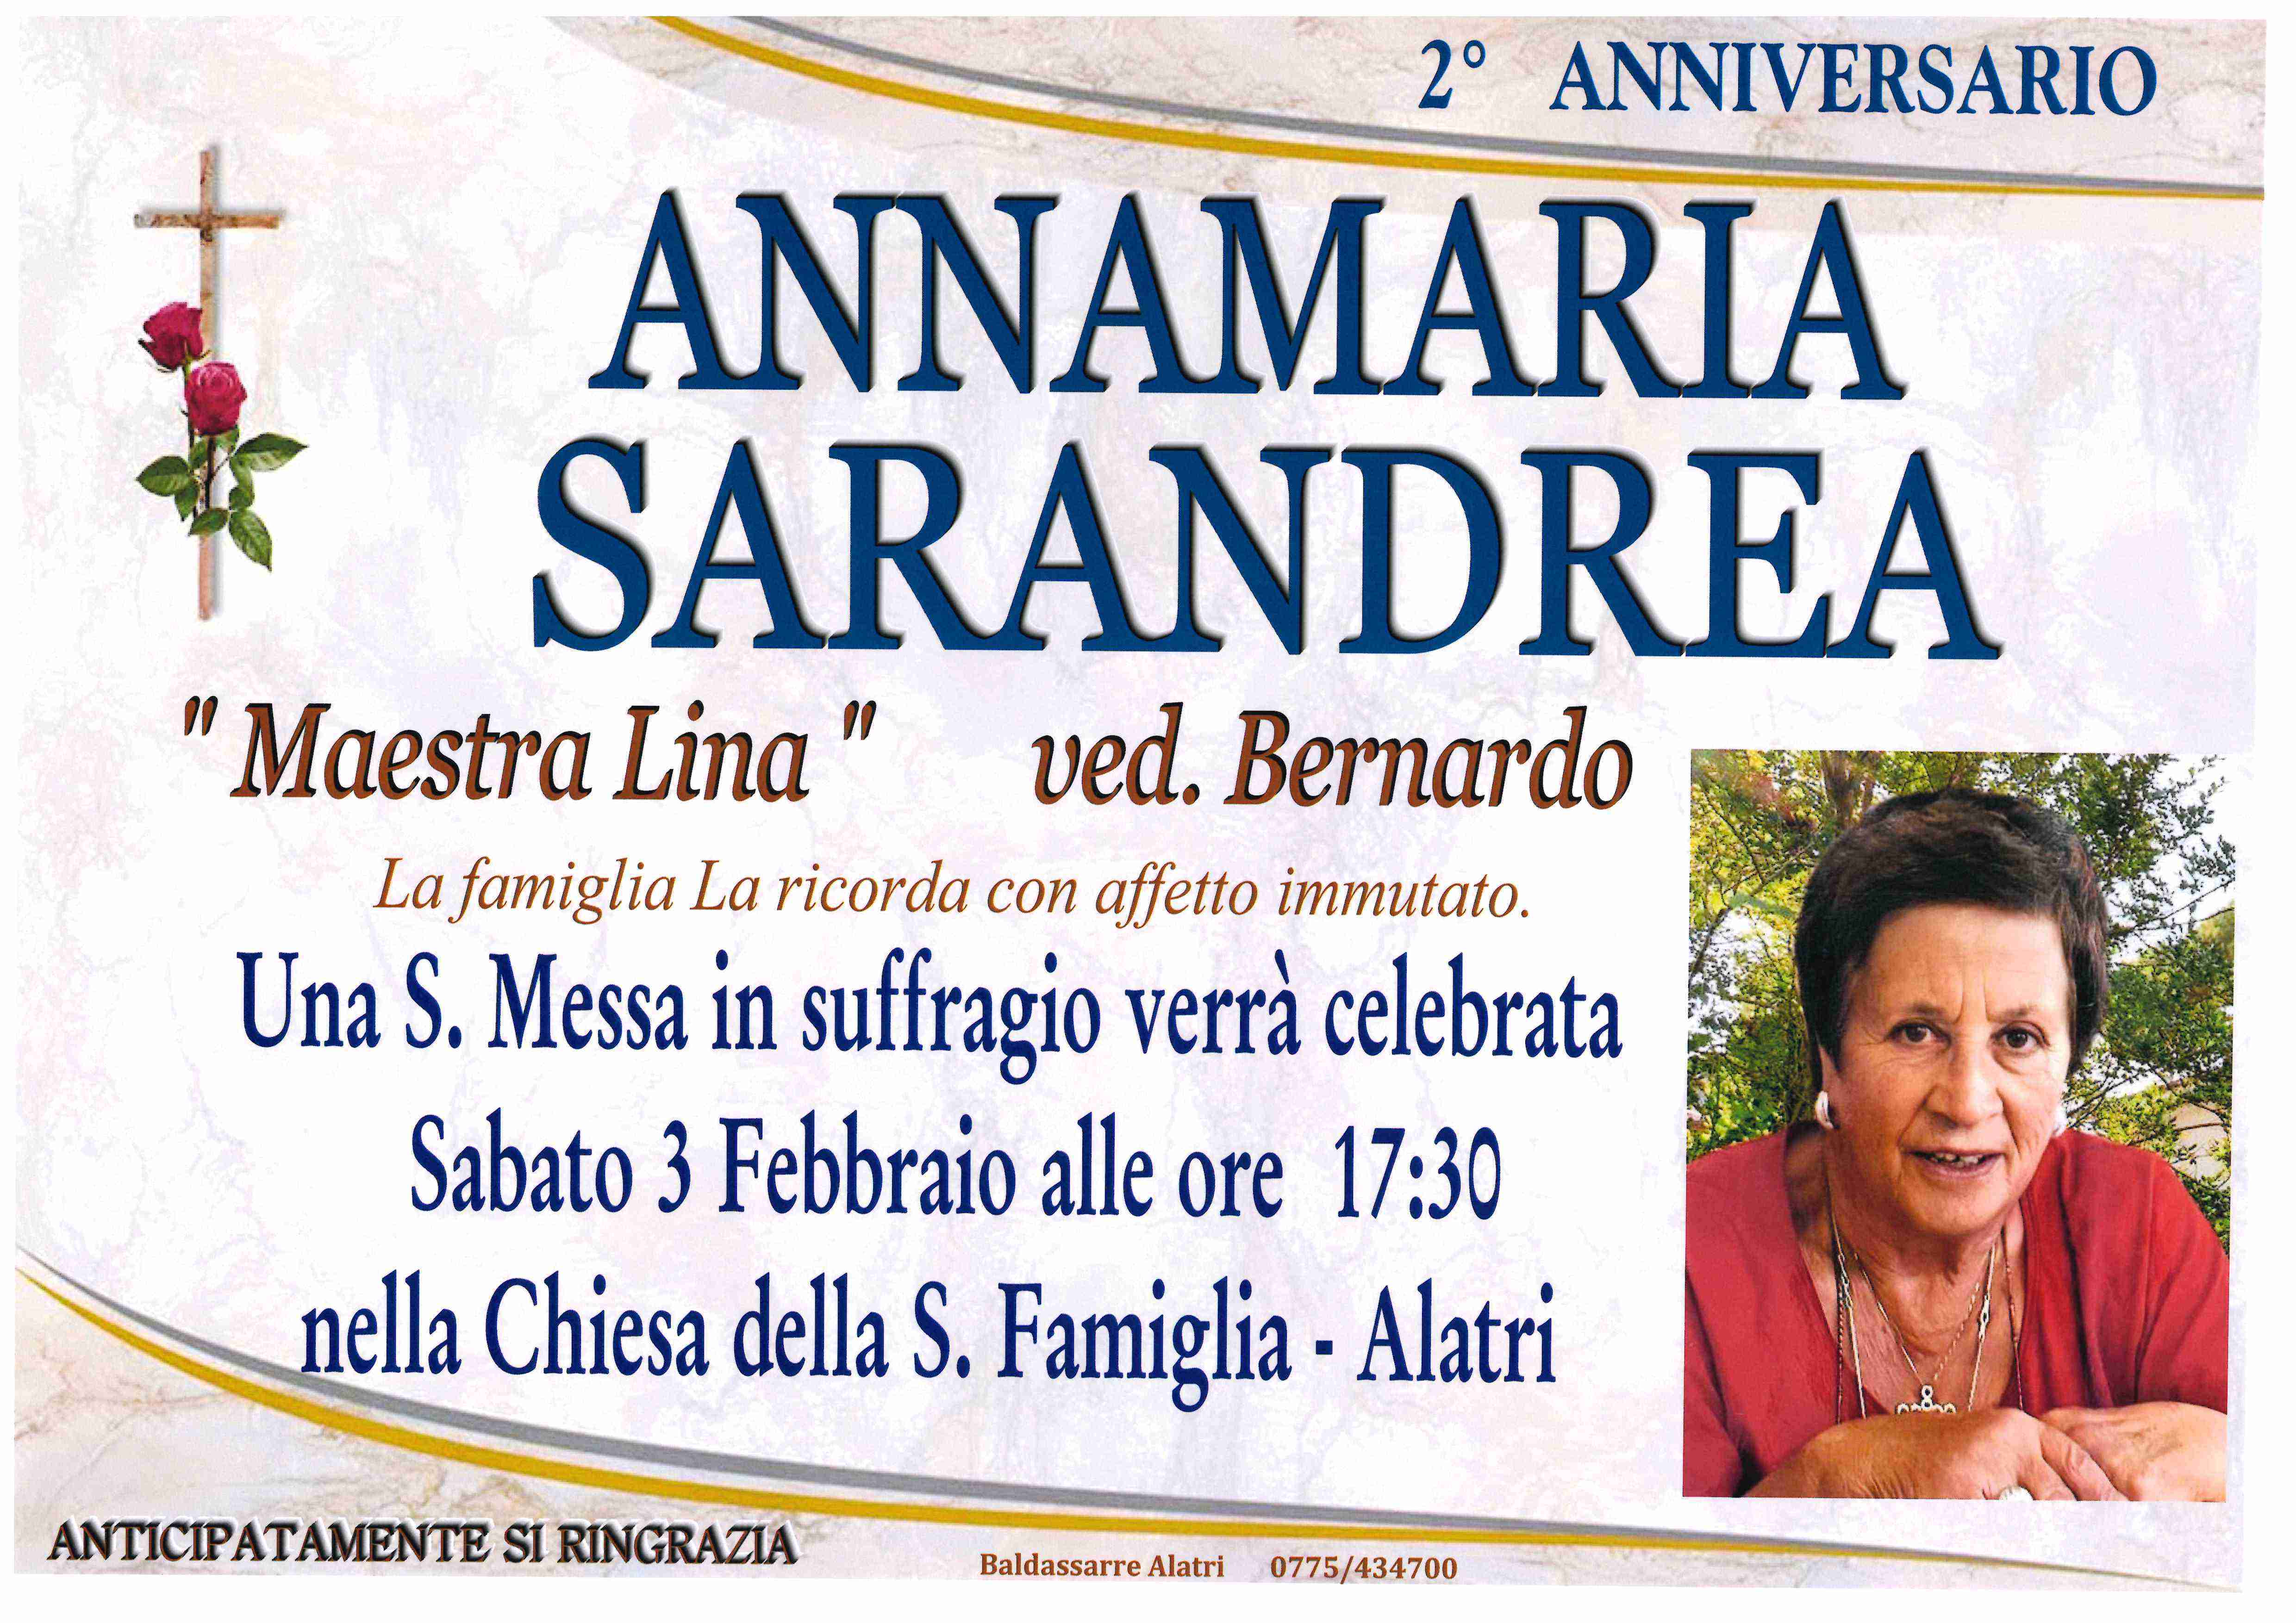 Annamaria Sarandrea